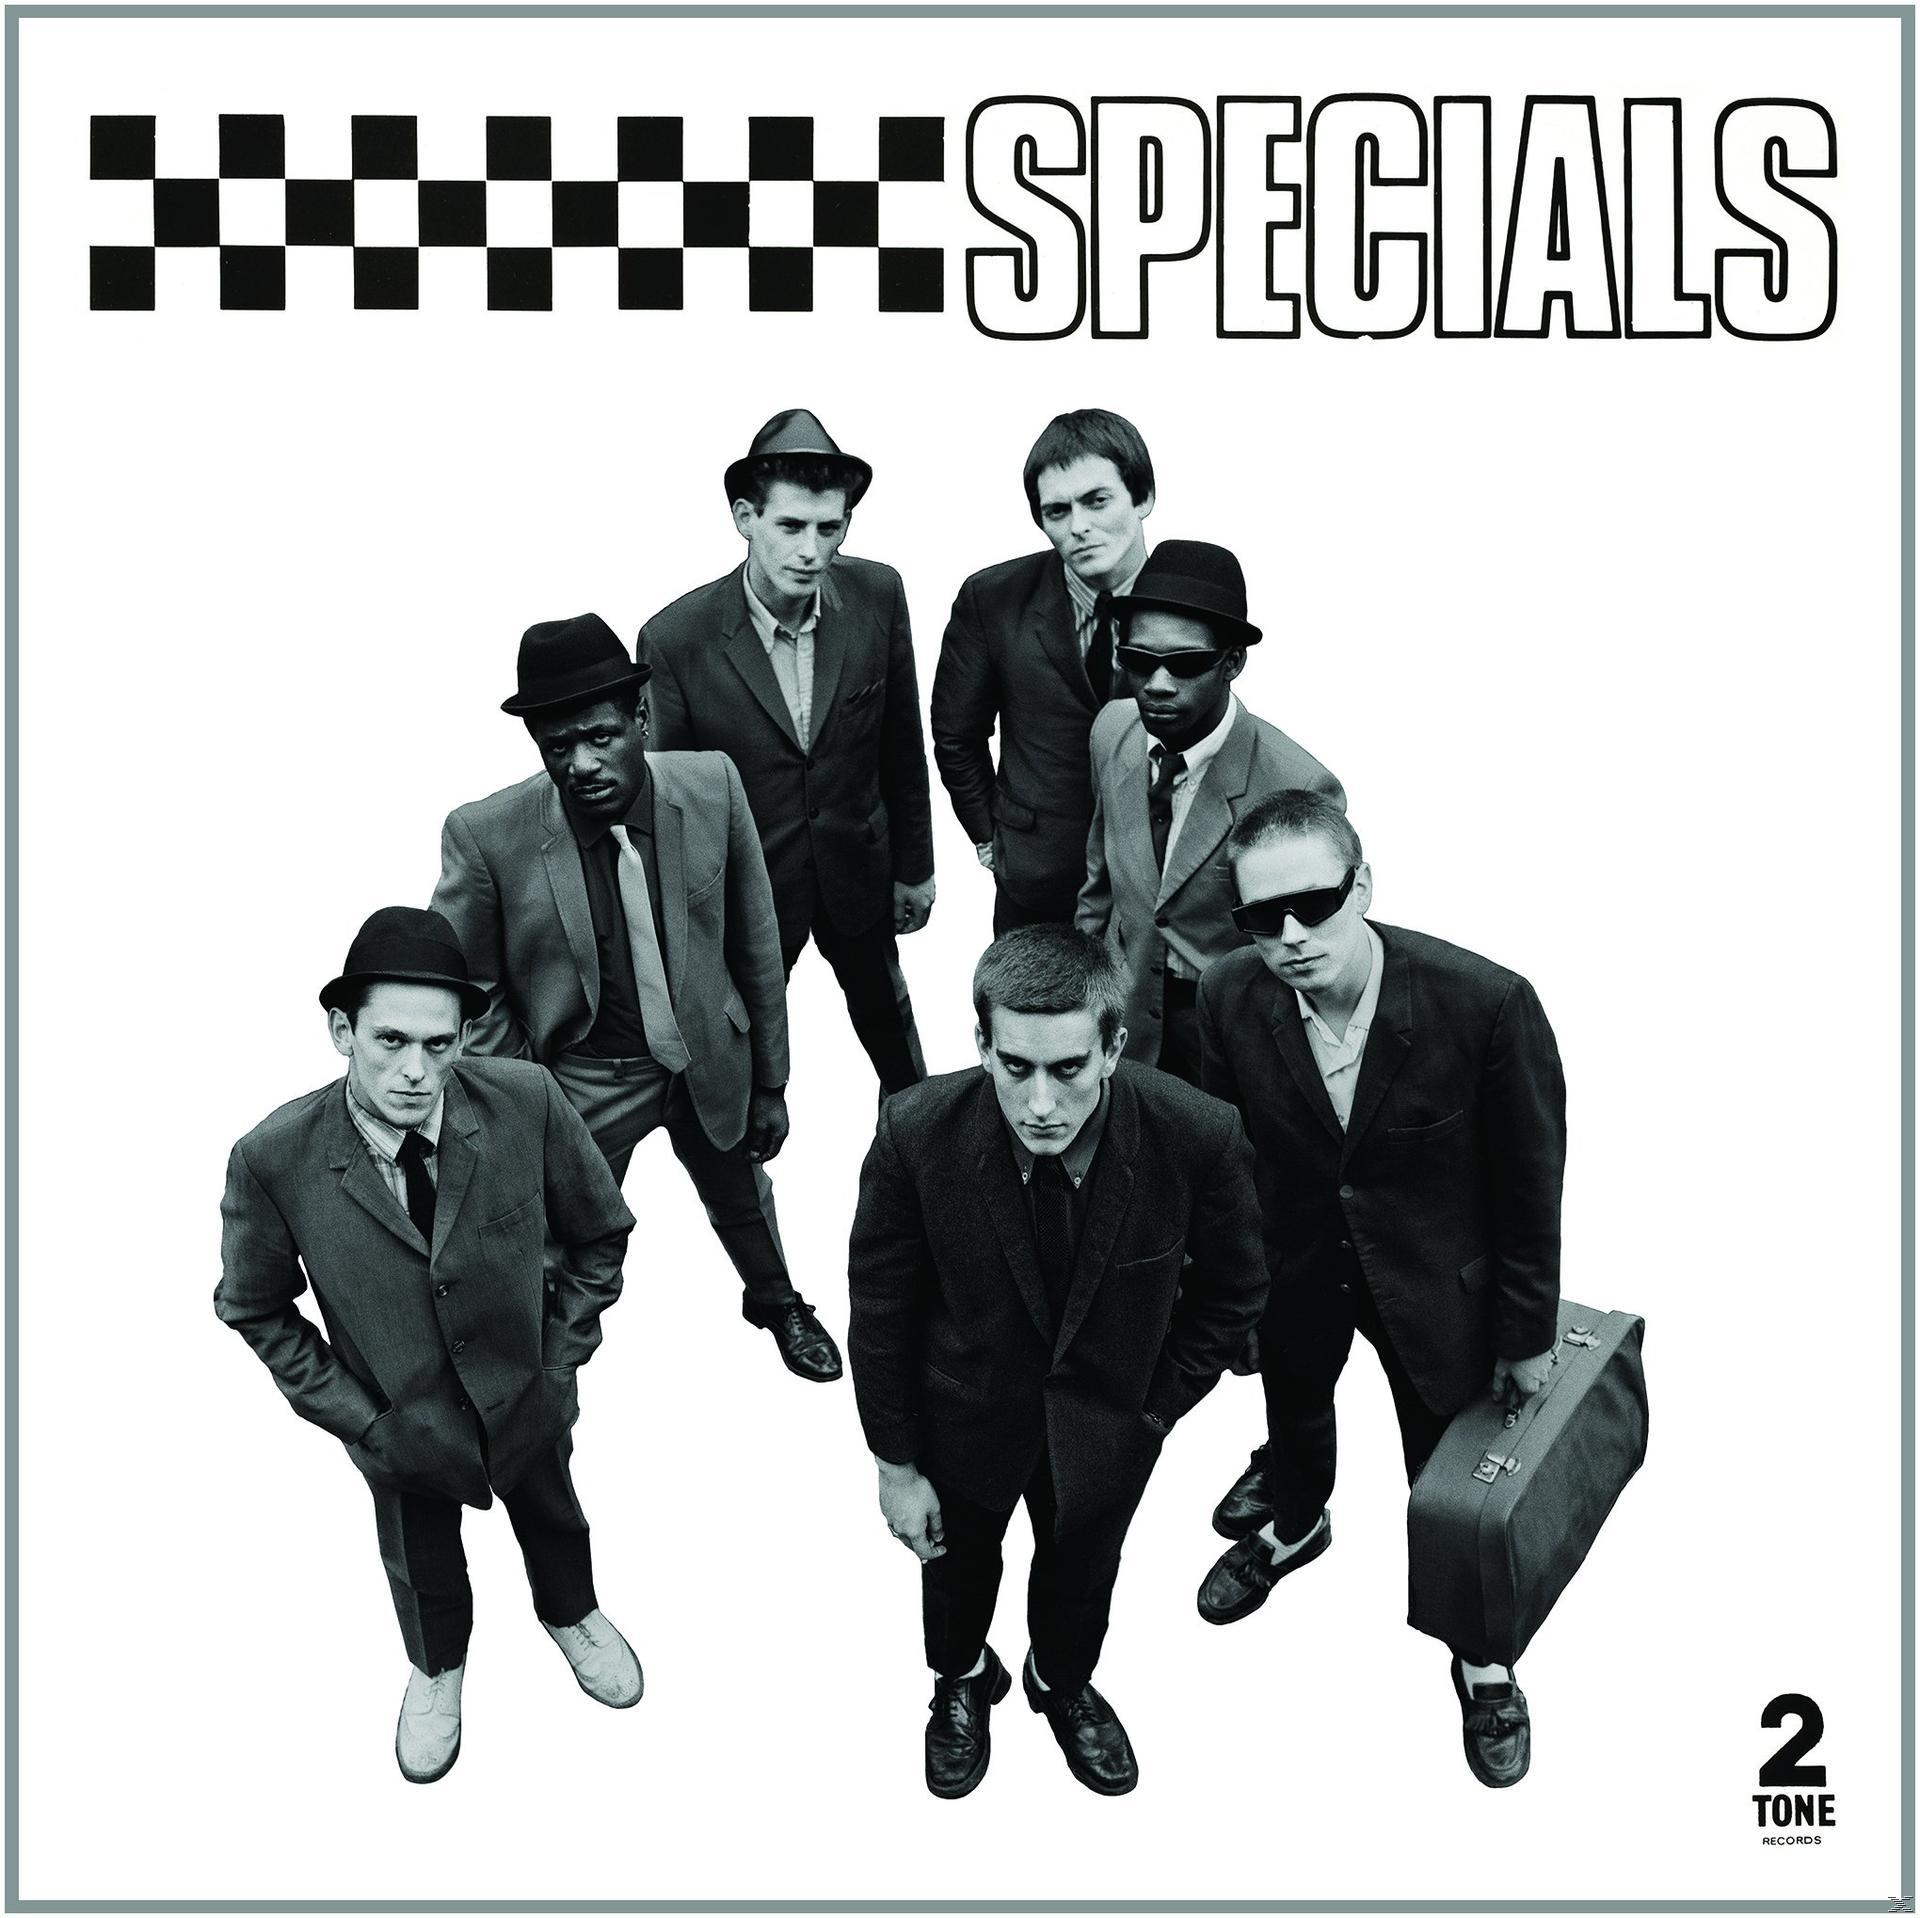 Ediiton) Specials (CD) The Specials - - (Special